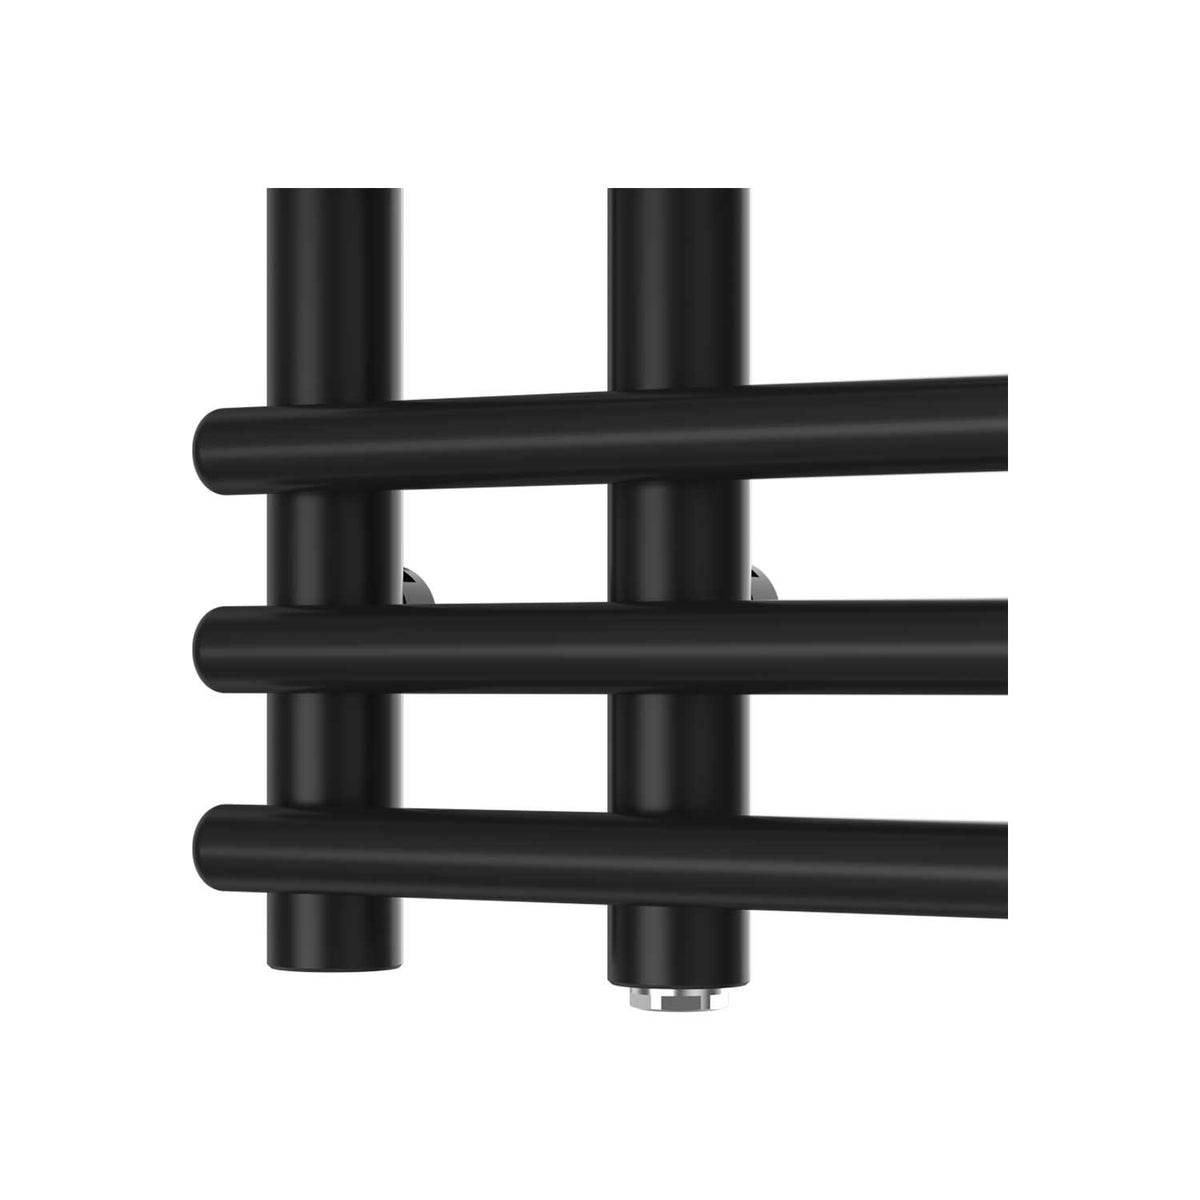 900 mm High x 500 mm Wide Difta Heated Towel Radiator Flat Black detail